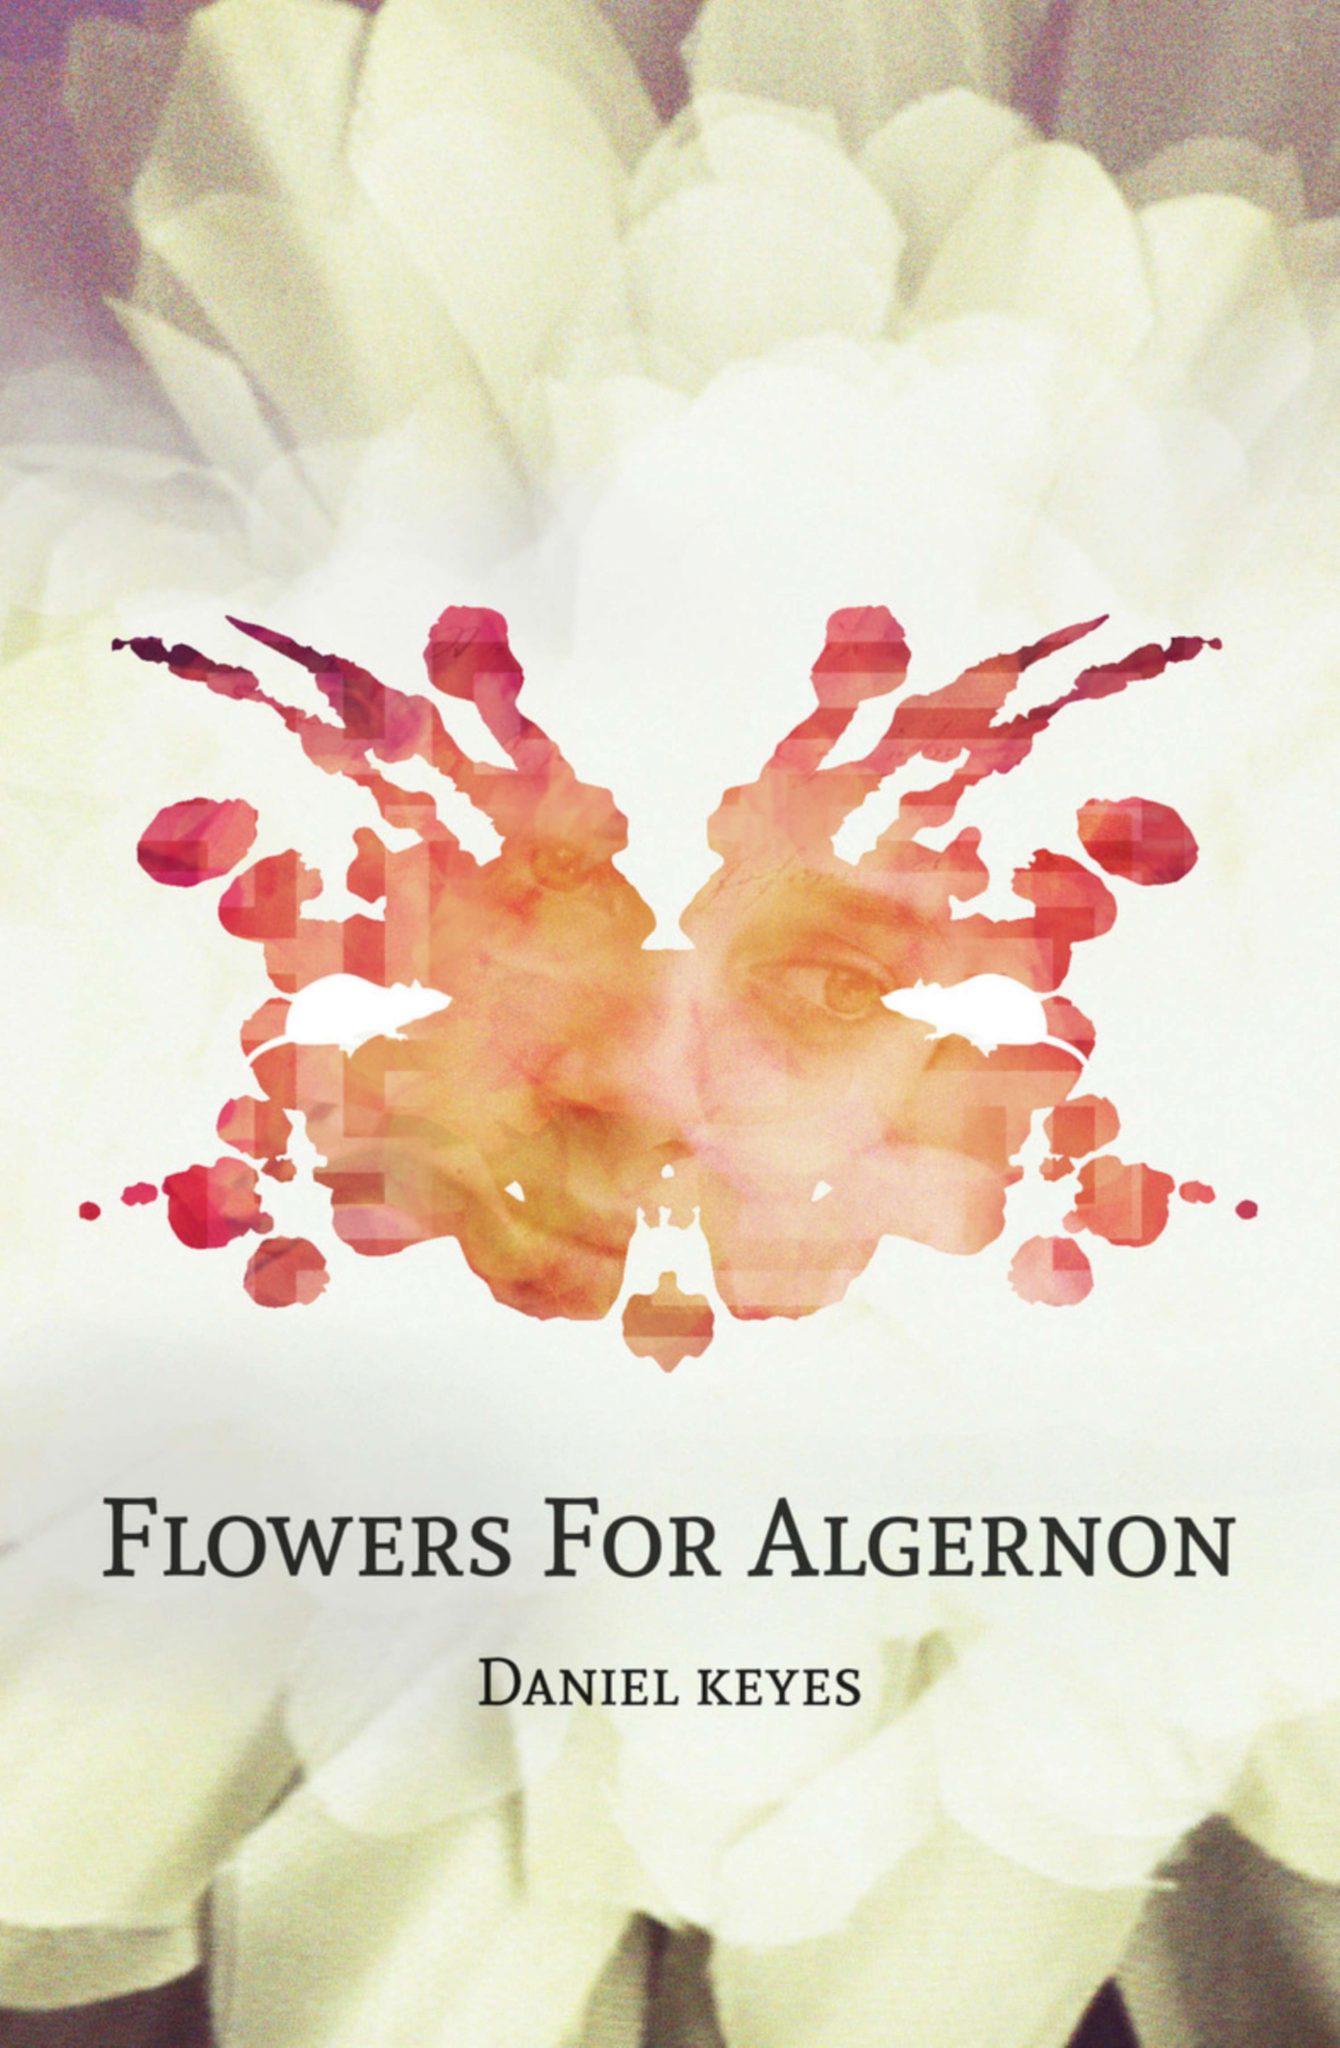 Flowers for algernon essay